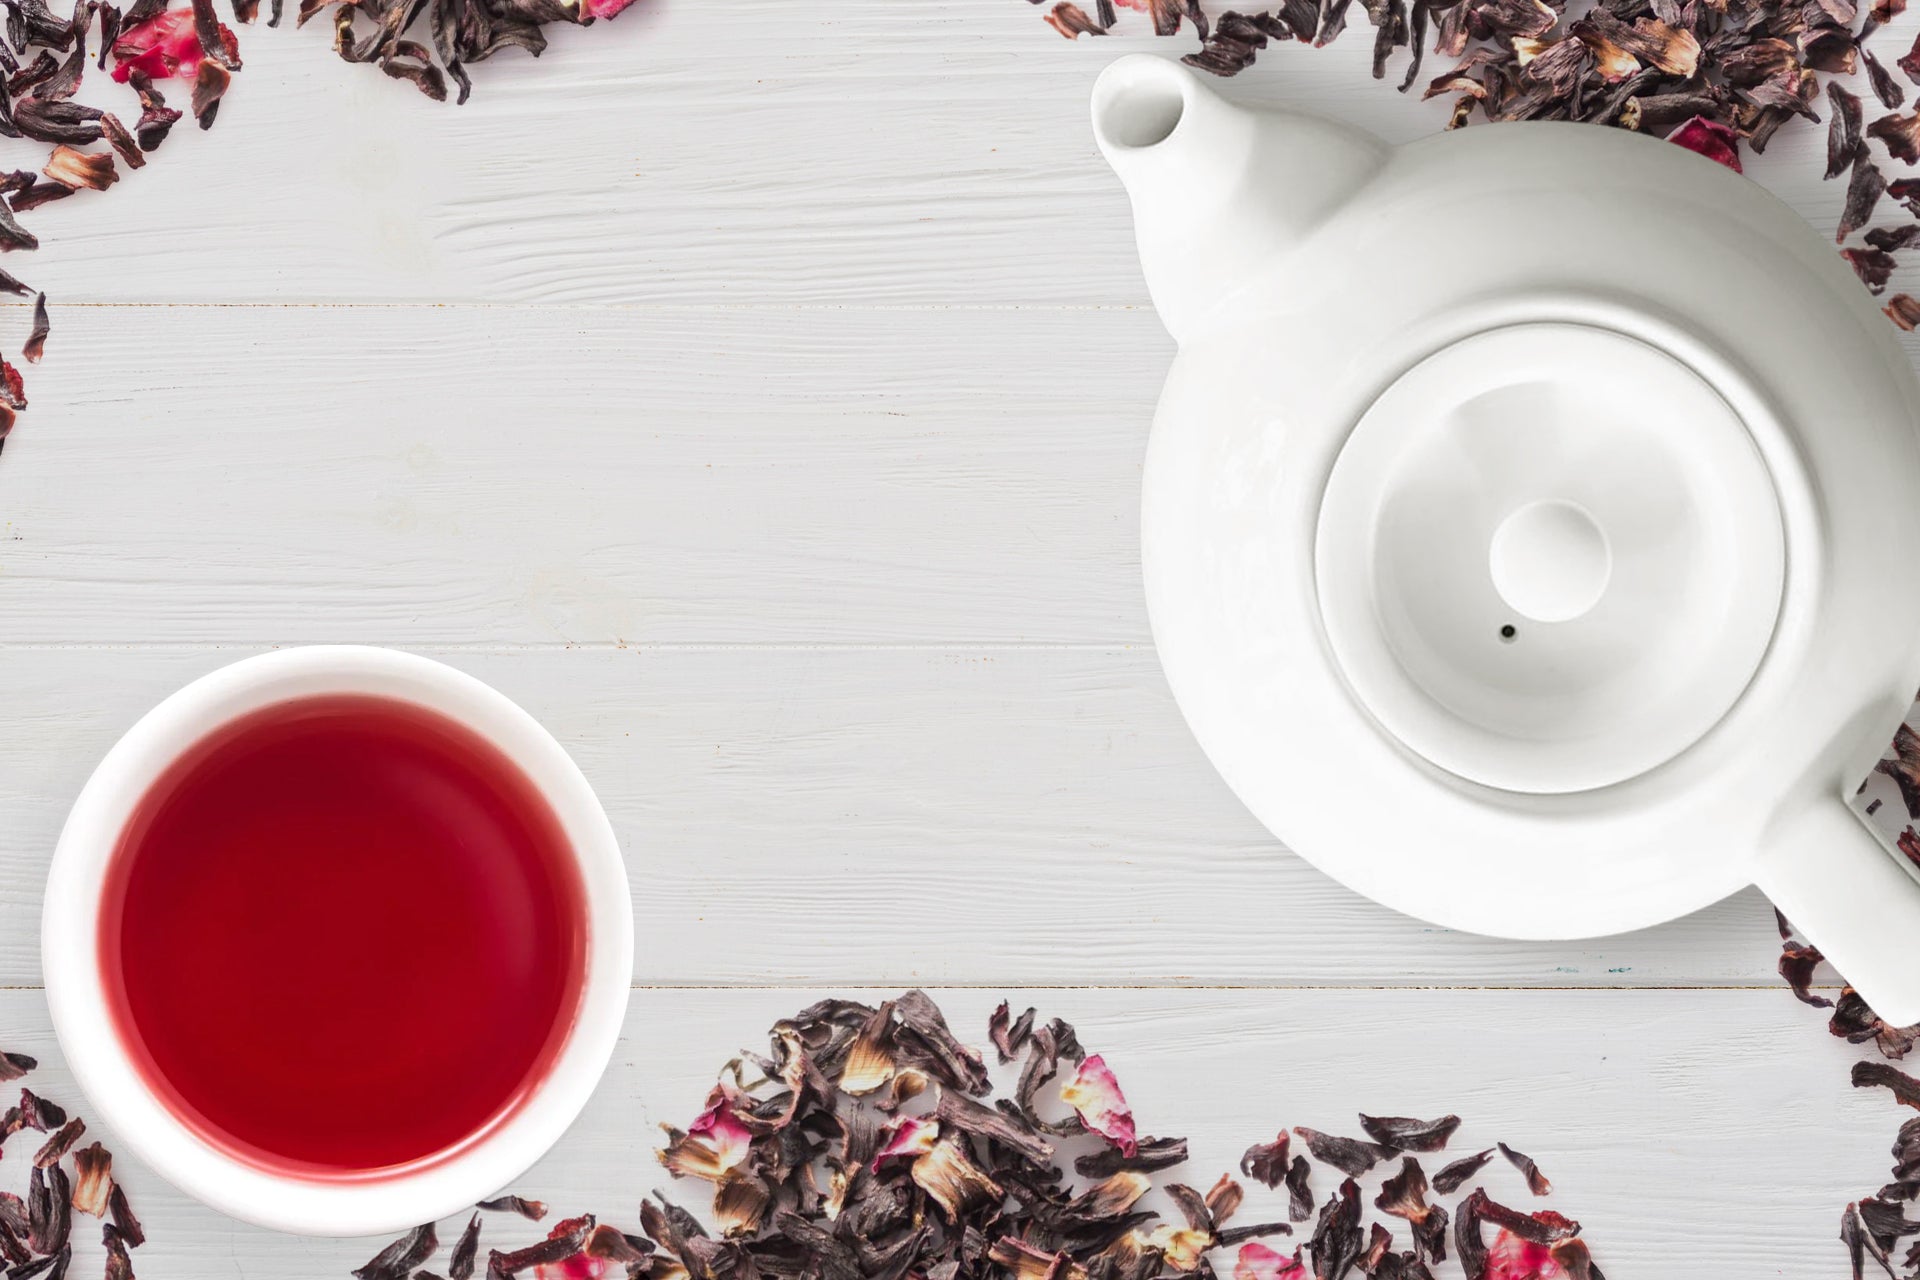 Hibiscus tea herbal tea benefits price recipe how to make